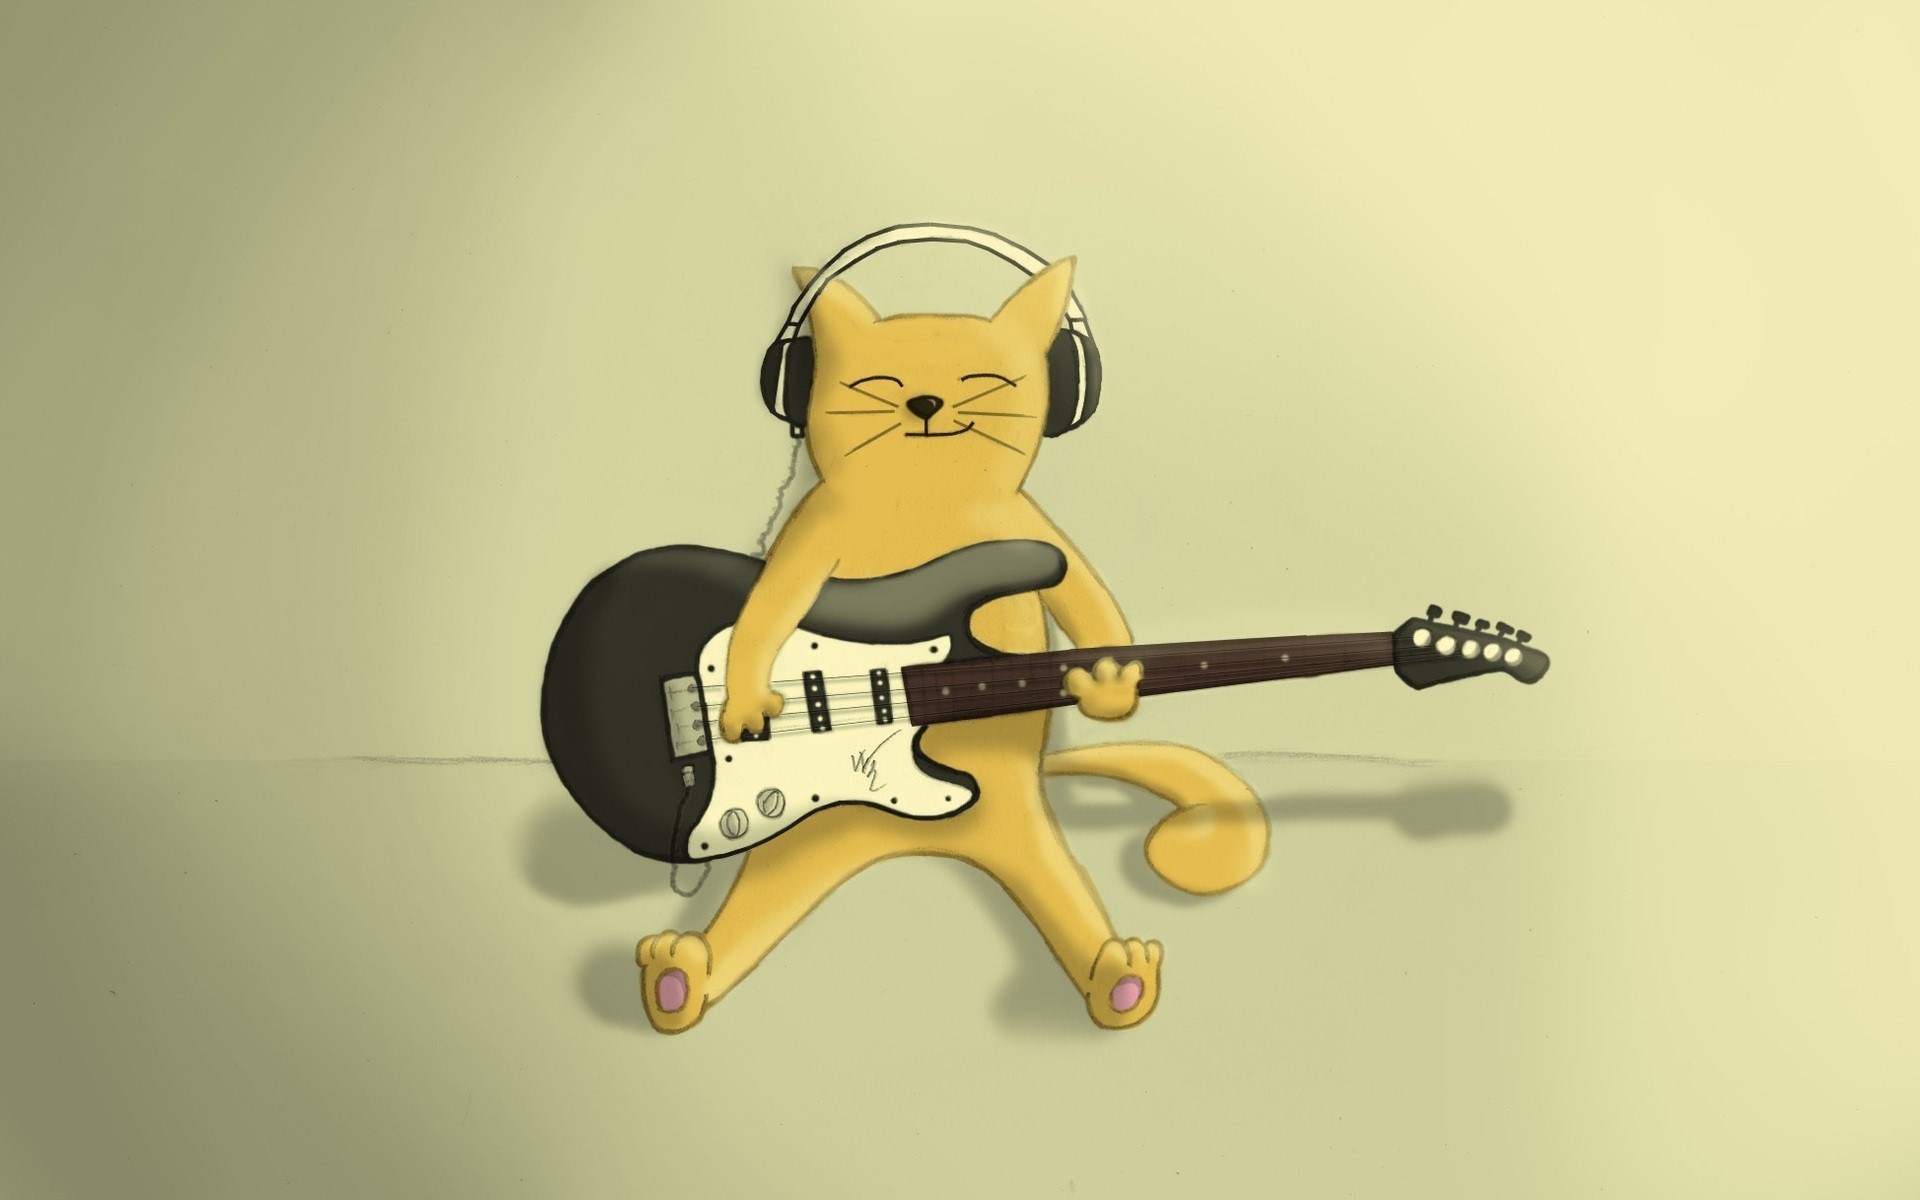 cat-headphones-guitar-music-artwork-hd-wallpaper jpg (1920×1200